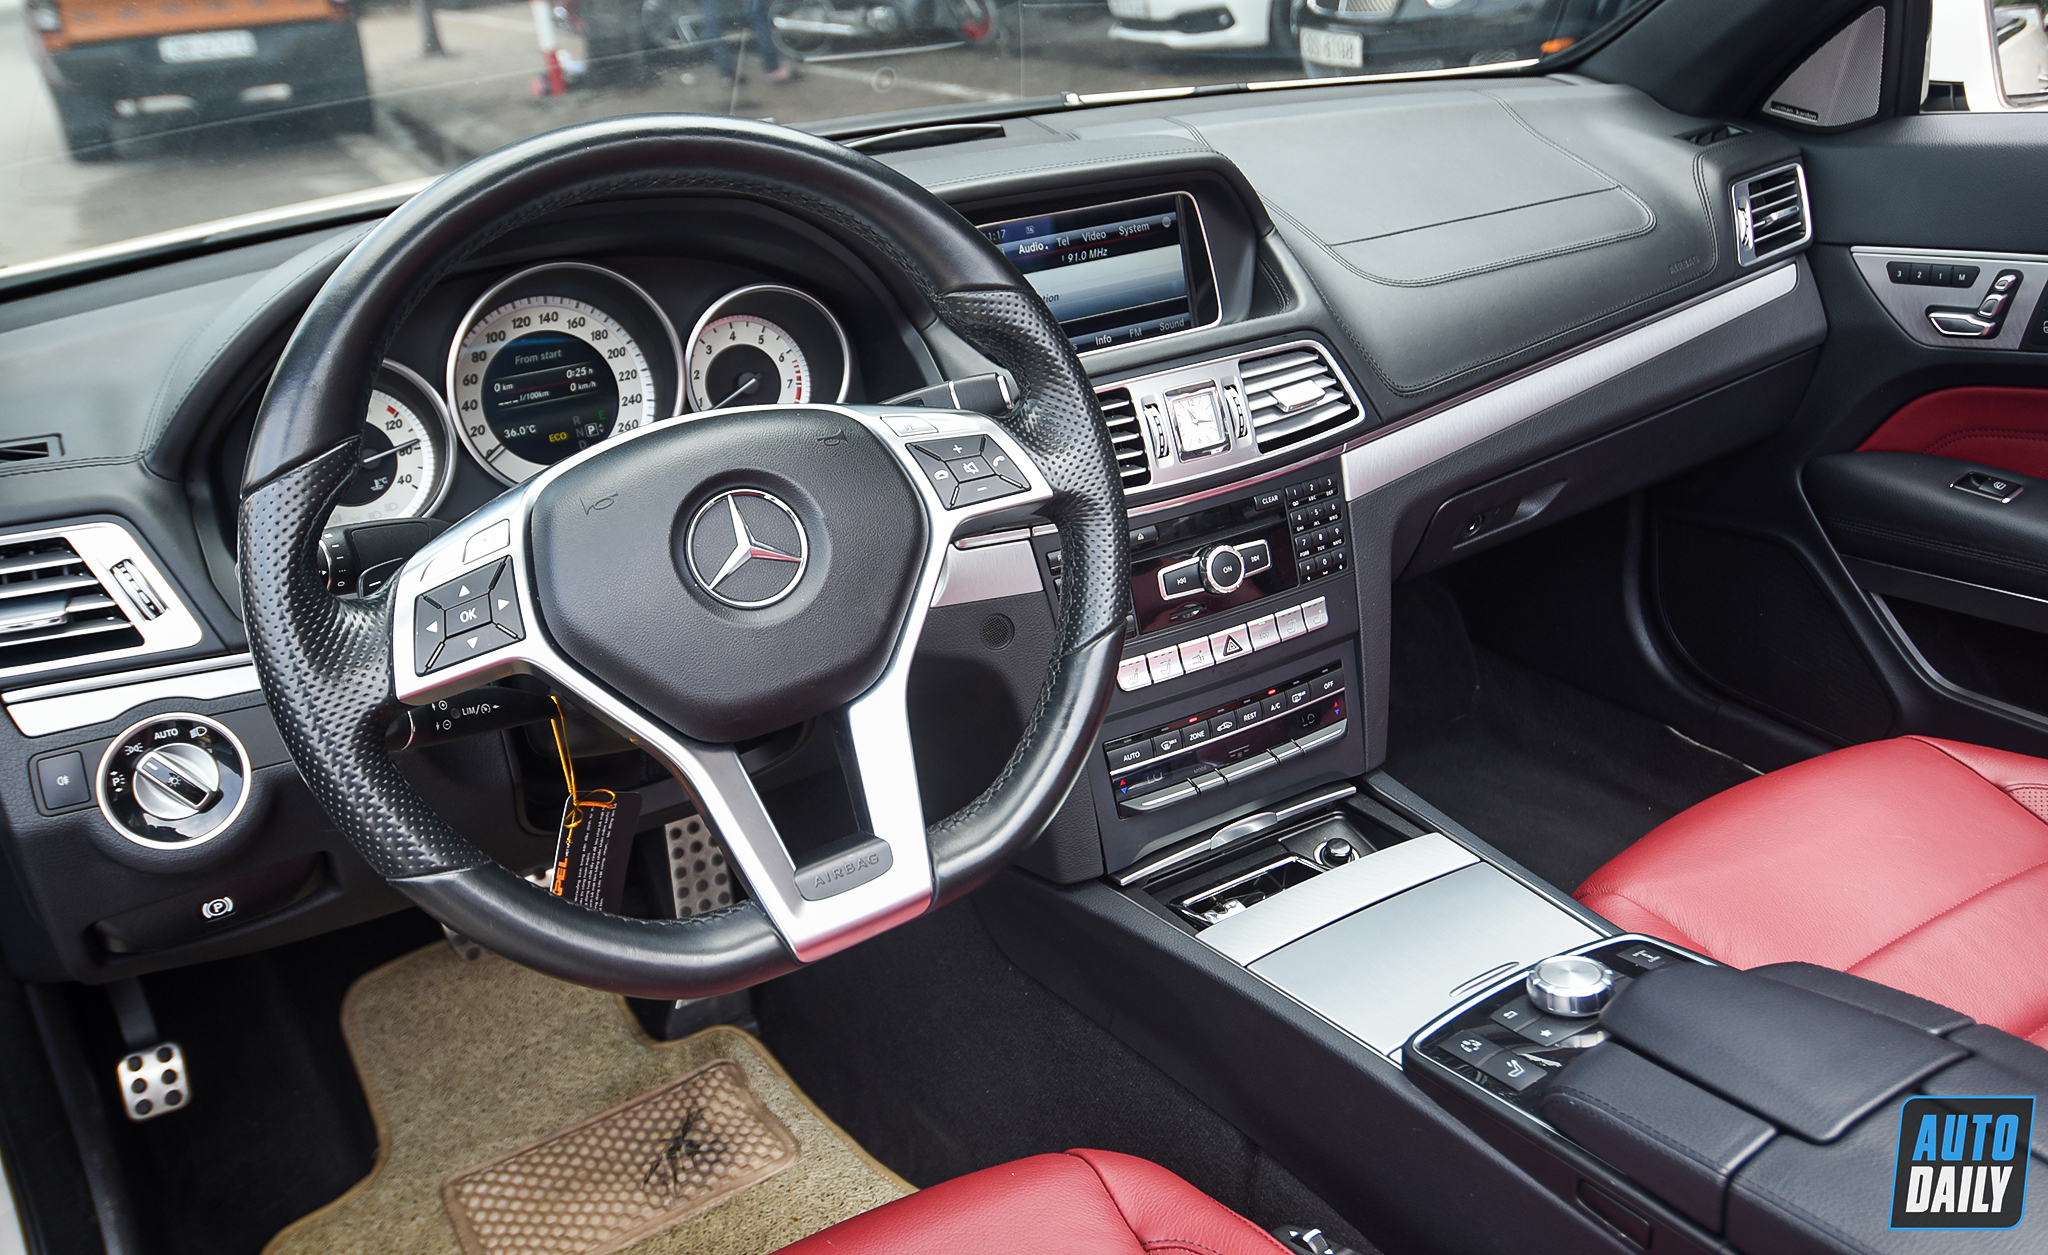 Mui trần hàng hiếm Mercedes-Benz E400 Cabriolet lên sàn xe cũ giá hơn 2 tỷ adt-4939-copy.jpg